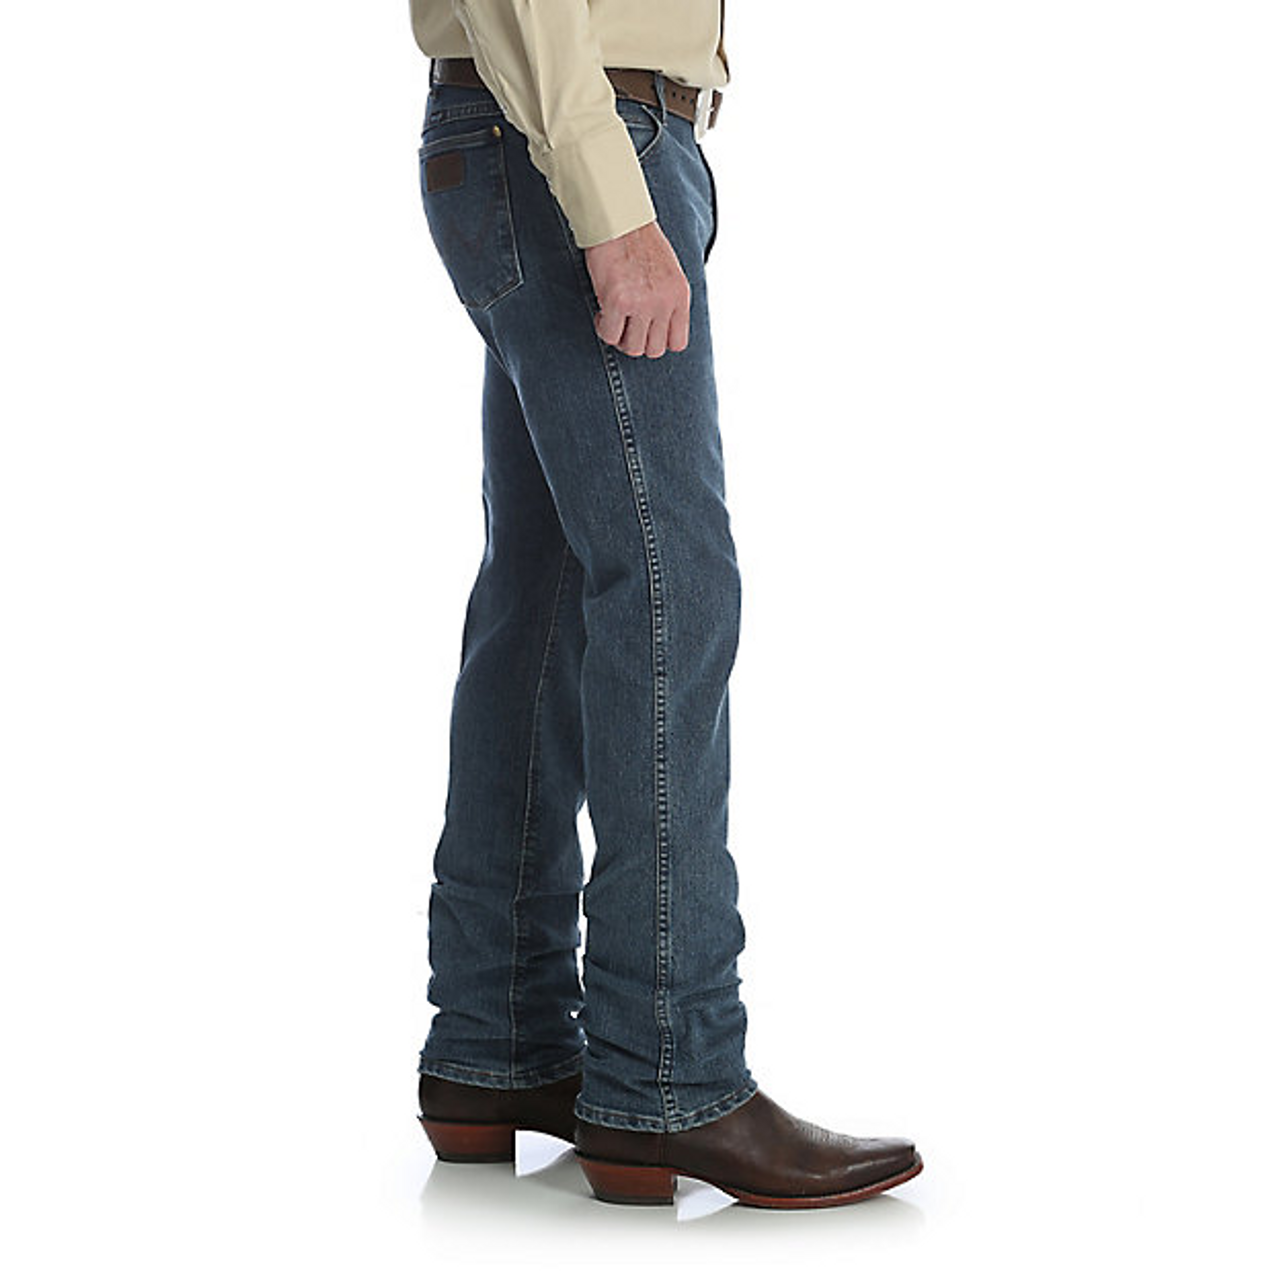 Men’s Premium Performance Cool Vintage Slim Fit Cowboy Cut Jeans